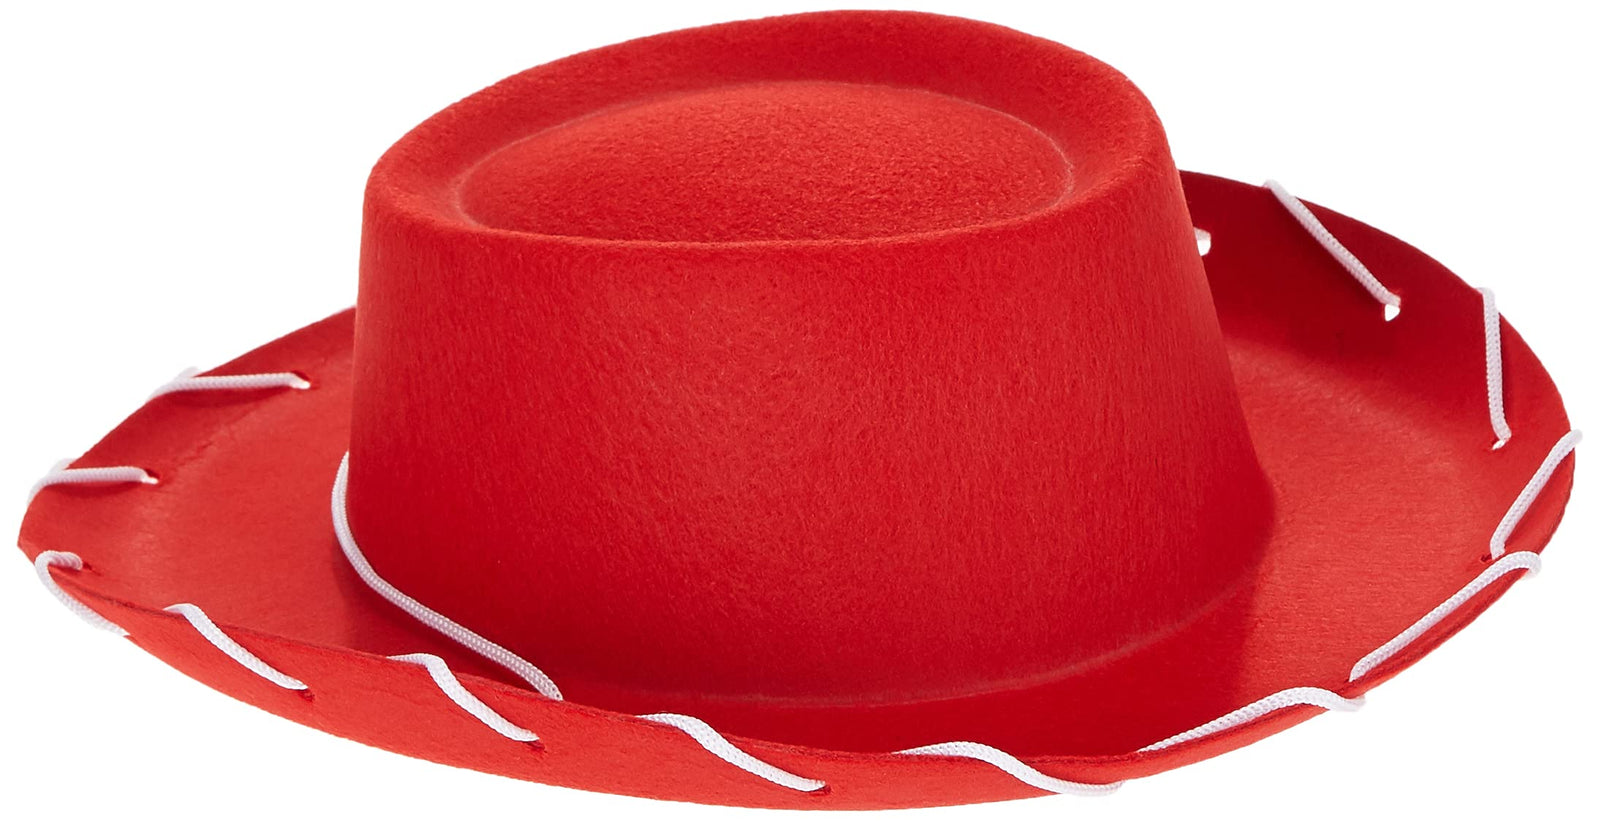 Century Novelty Children's Red Felt Cowboy Hat